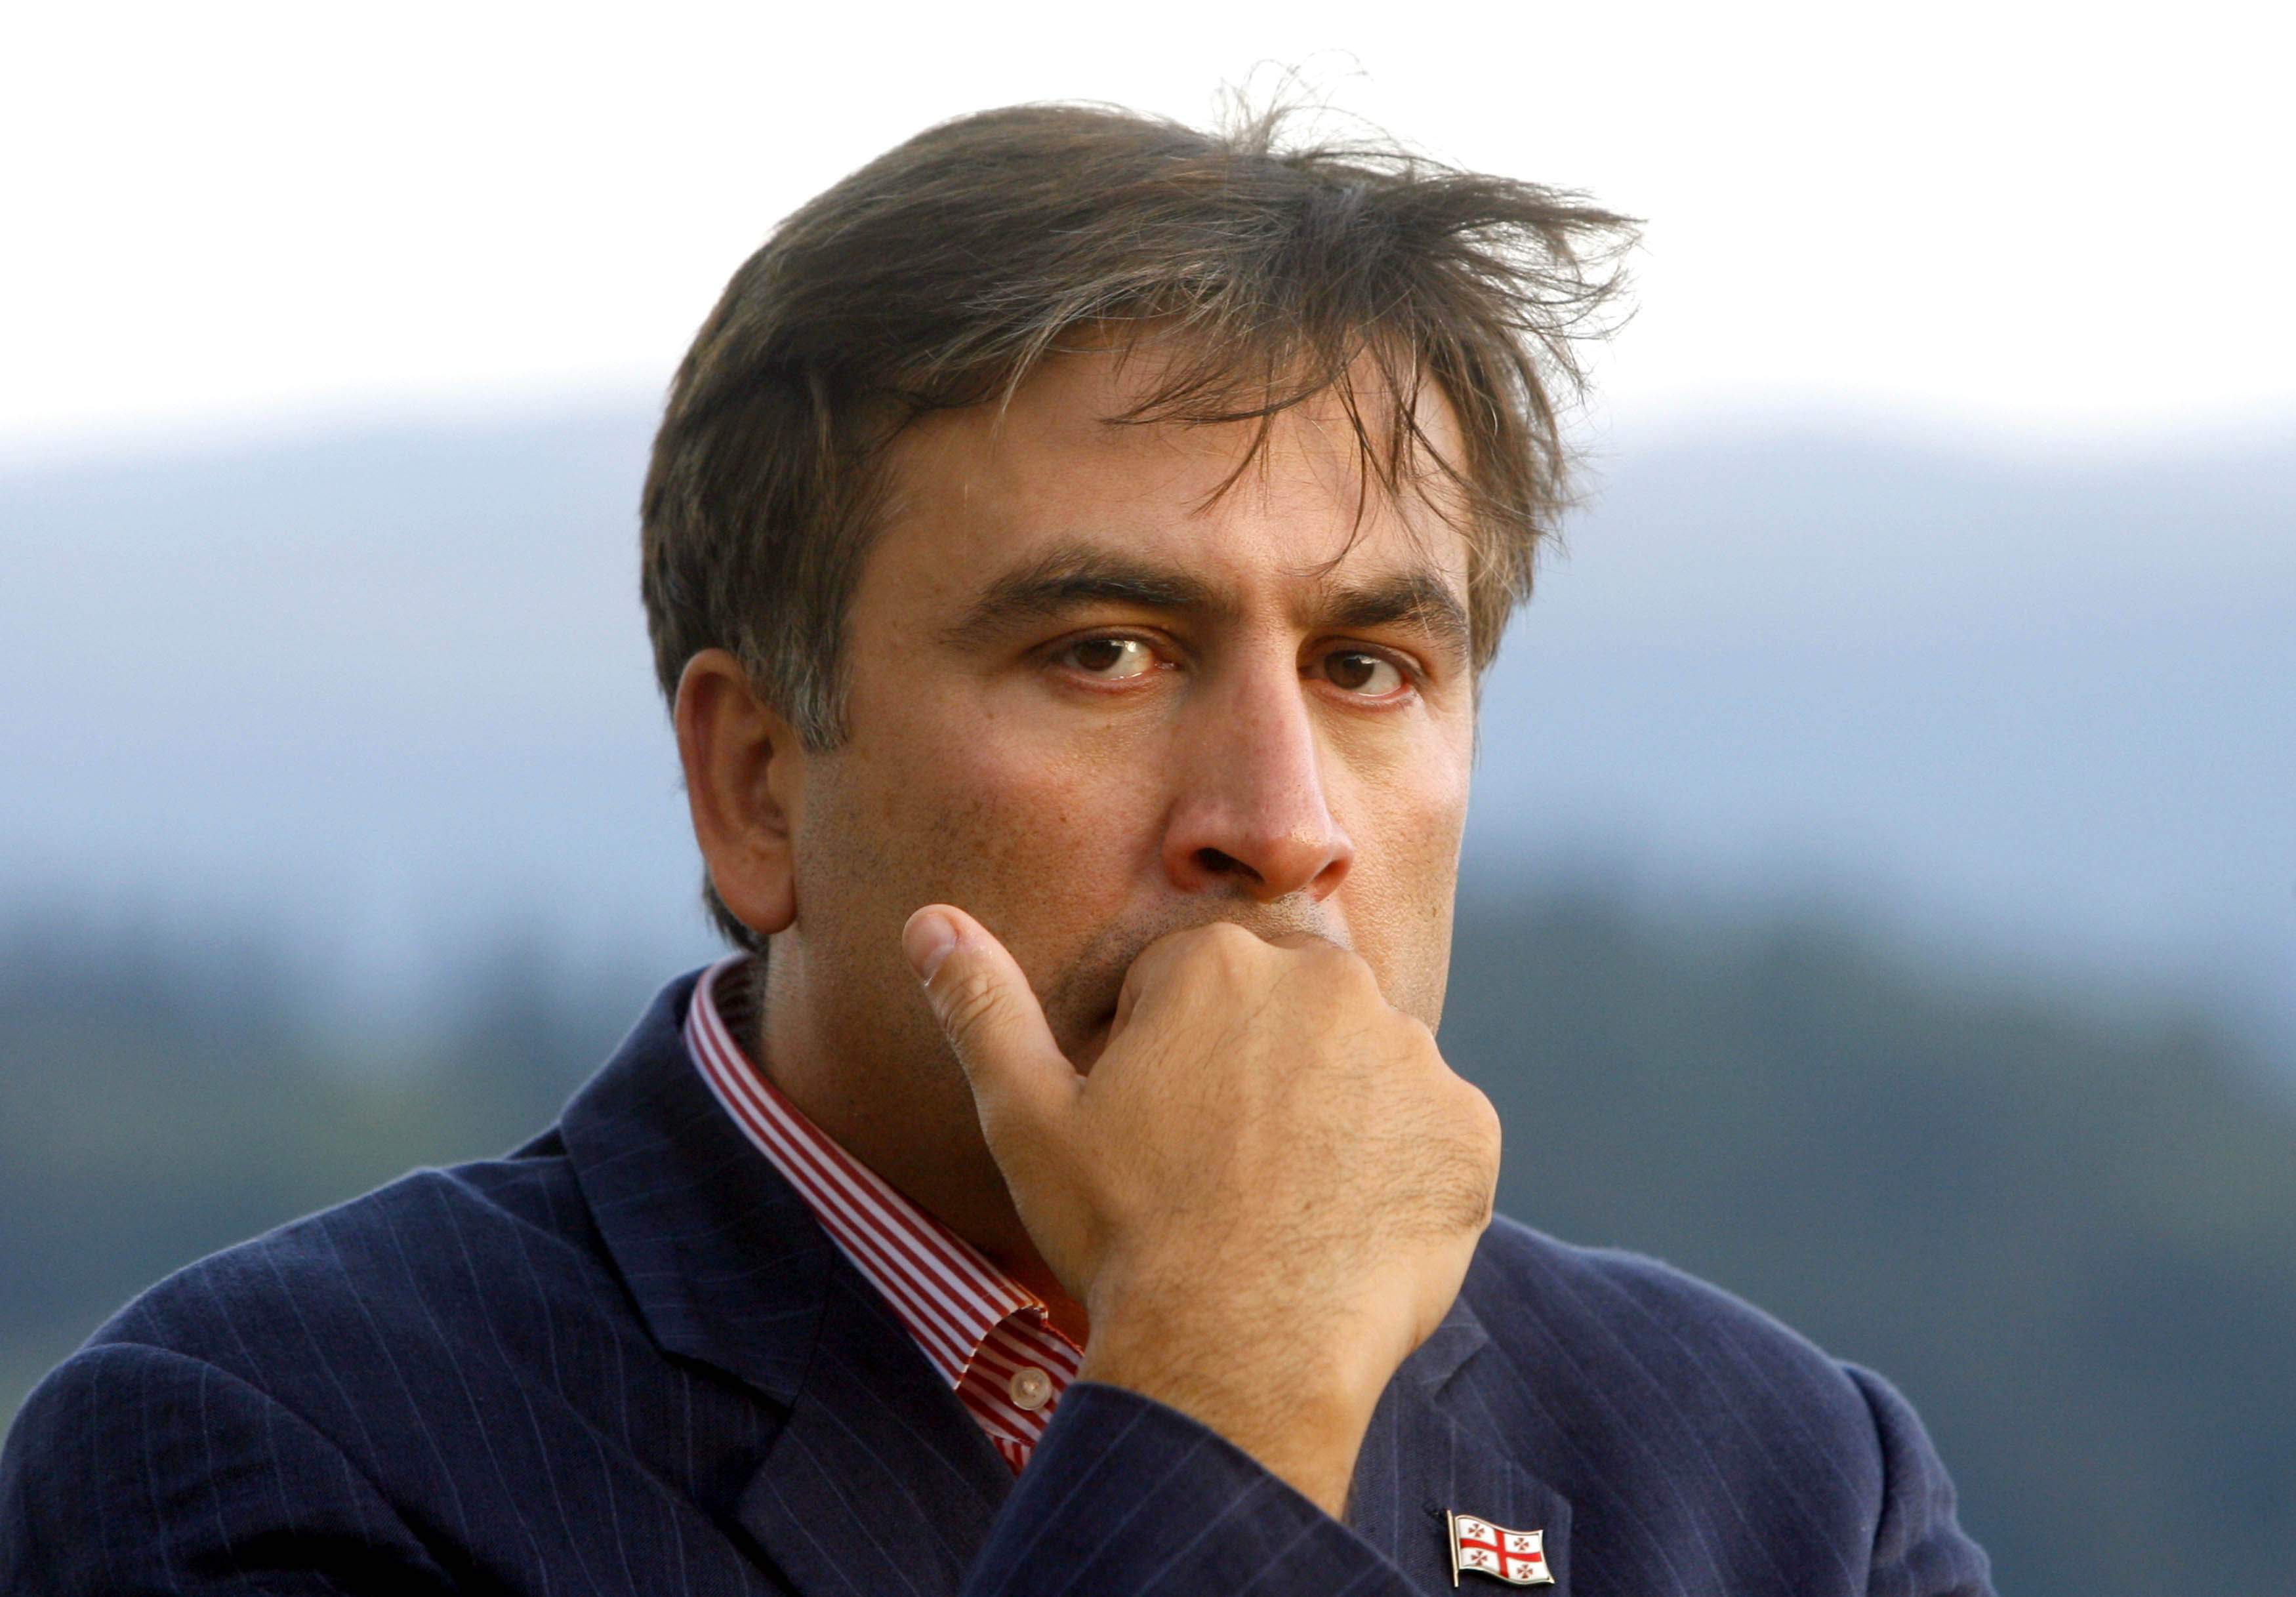 Саакашвили: сотрудники МВД Авакова задержали моего брата Давида и вывезли в неизвестном направлении - опубликованы кадры